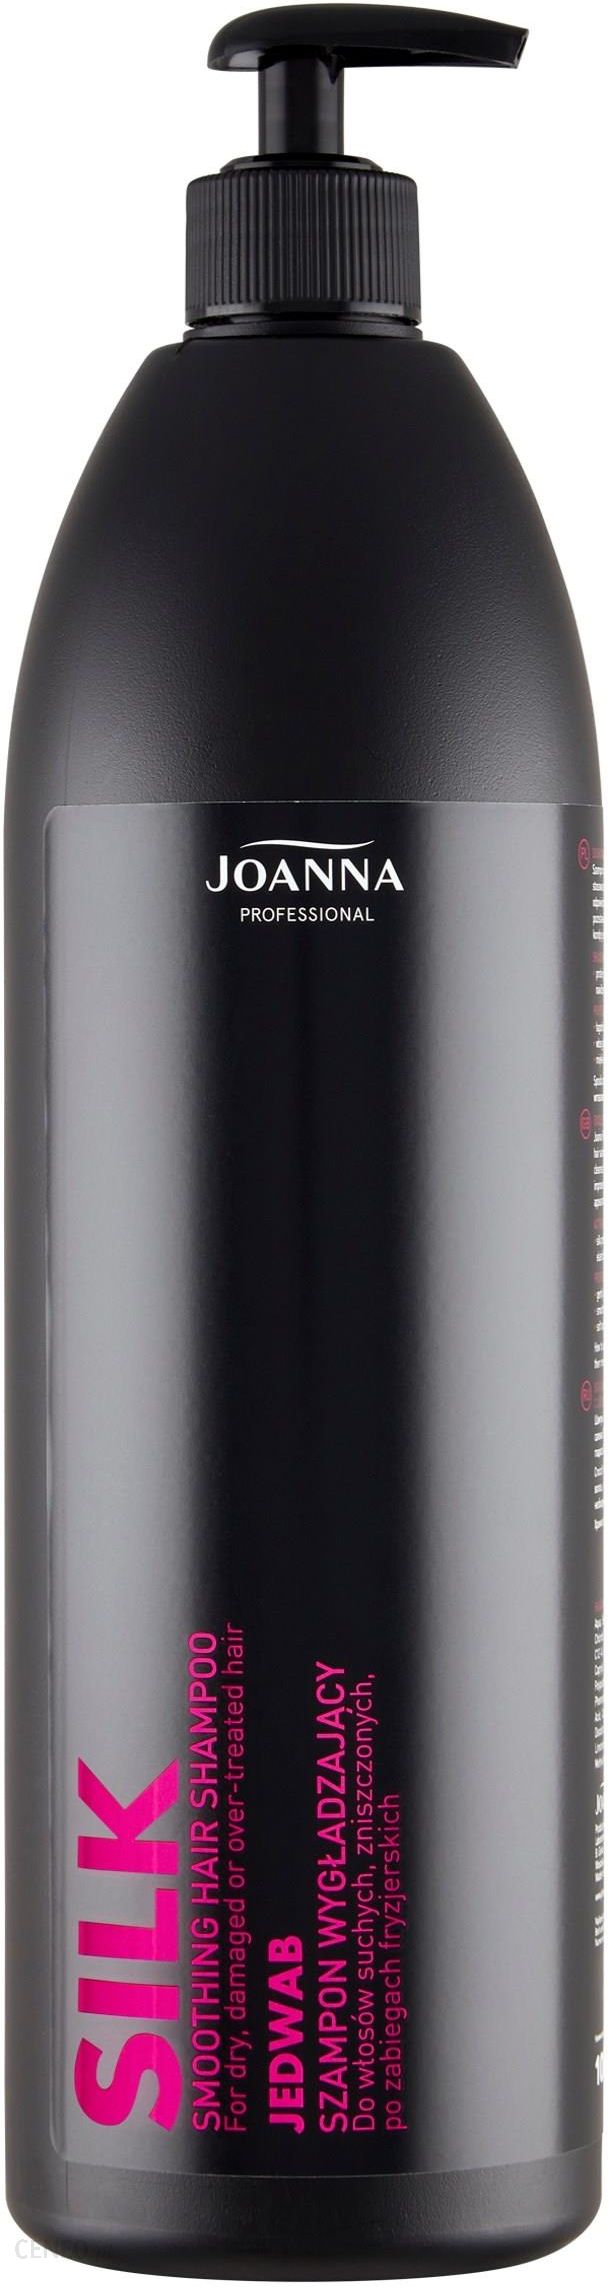 joanna szampon silk